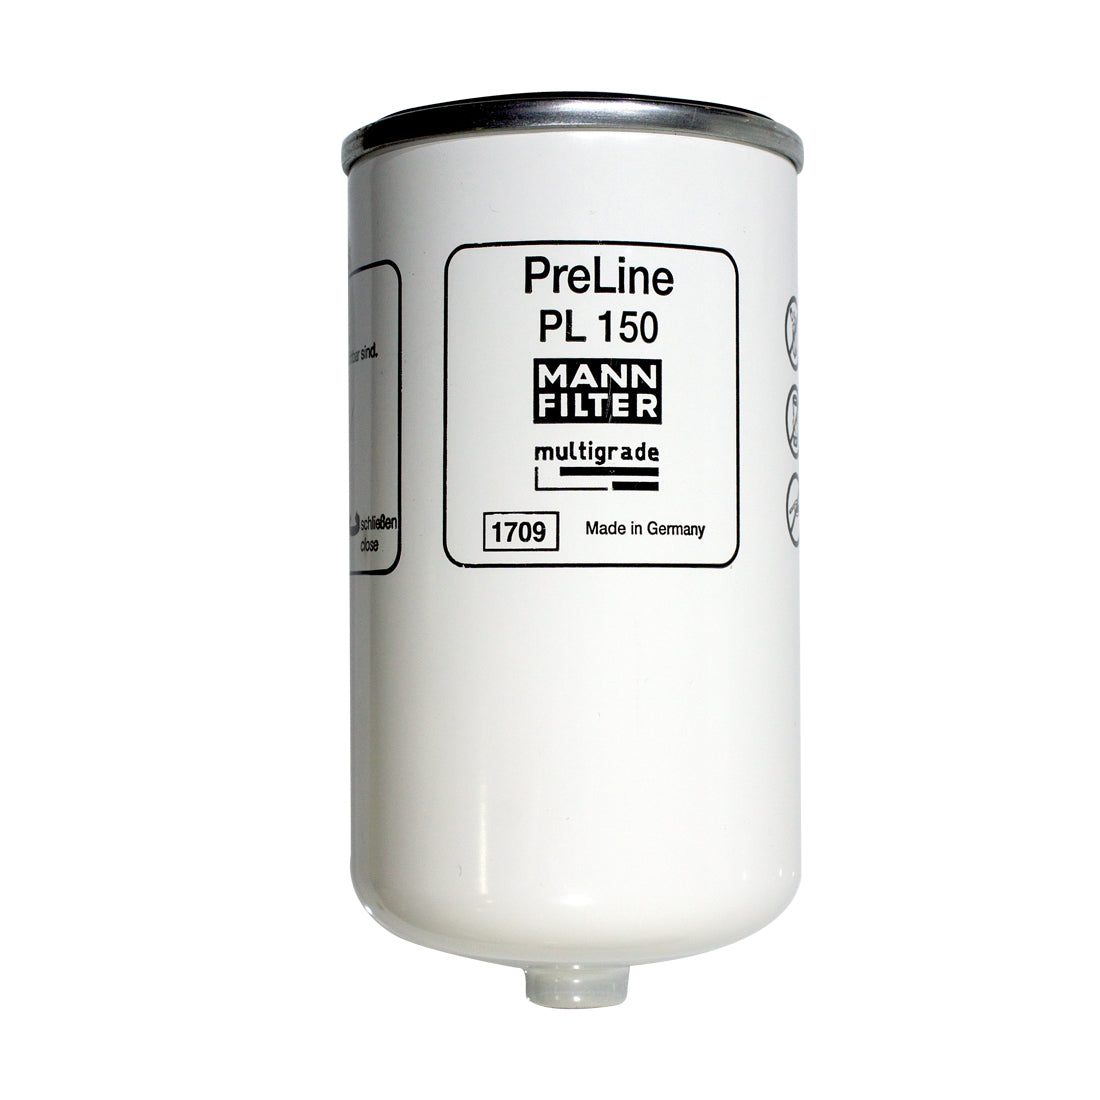 Preline-Plus Diesel Pre-Filter Kit - Universal 12mm With Bracket & Fittings